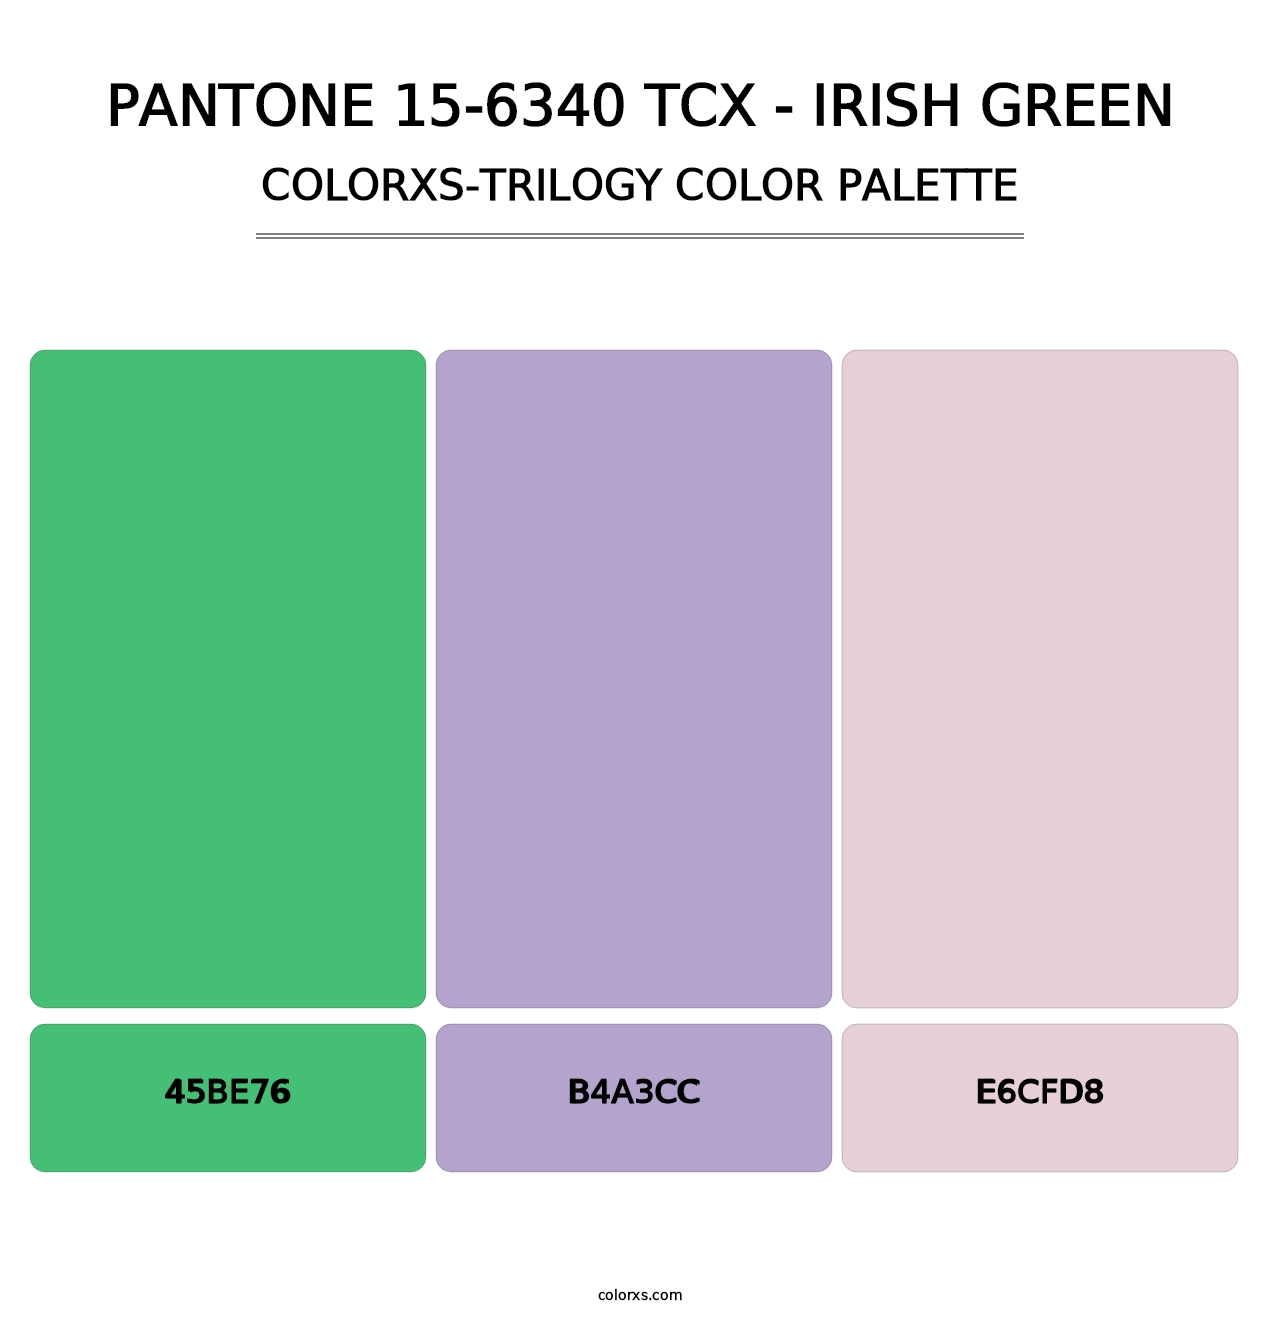 PANTONE 15-6340 TCX - Irish Green - Colorxs Trilogy Palette